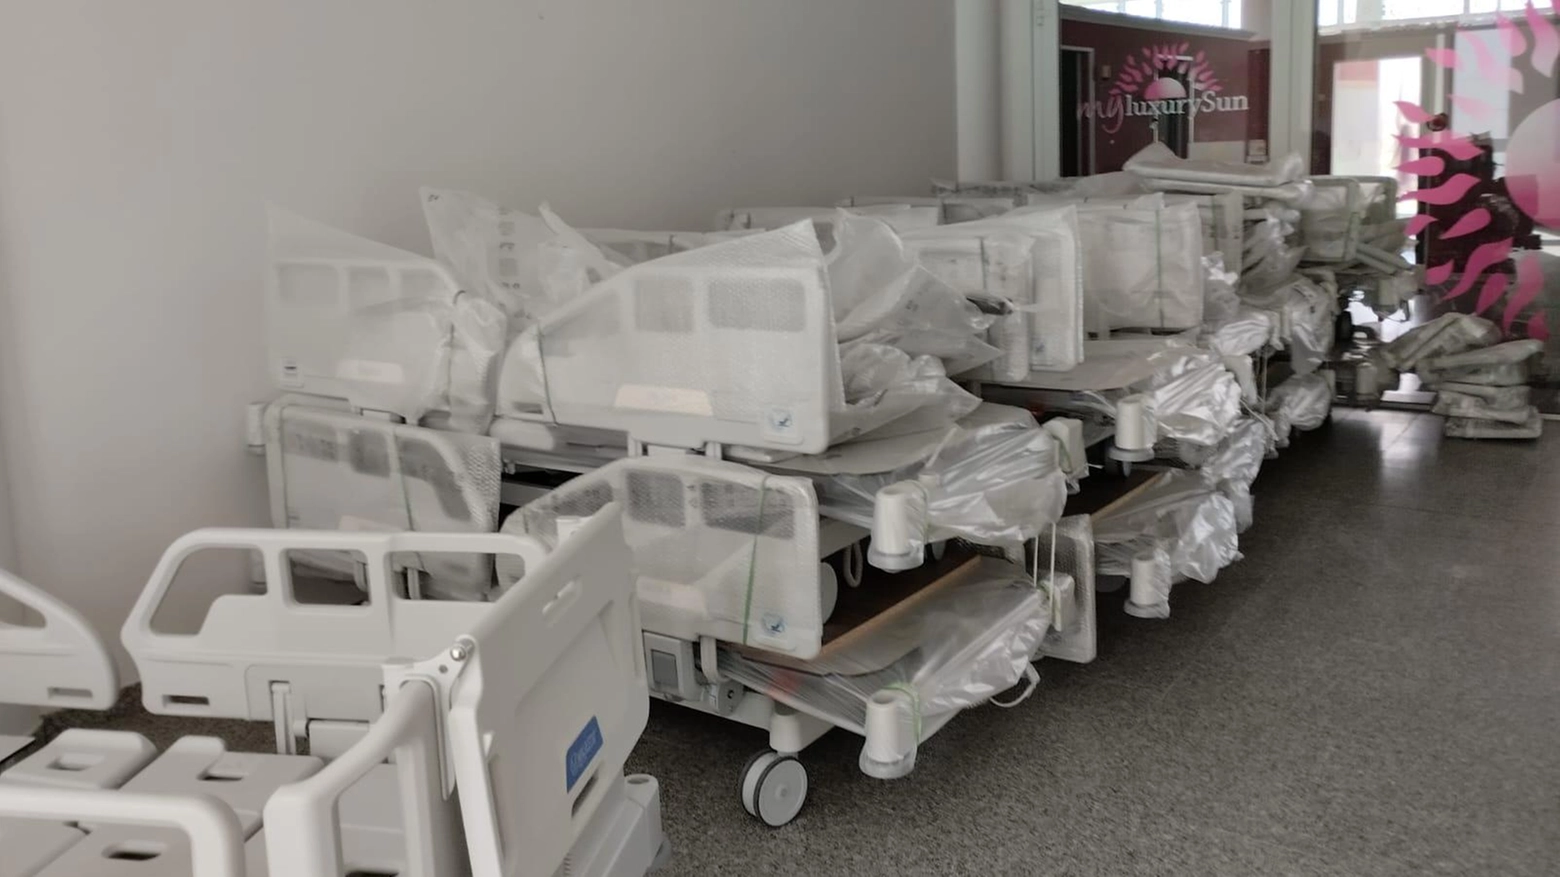 Sanità, nuove dotazioni. Sono 185 i letti elettrici consegnati in tre ospedali